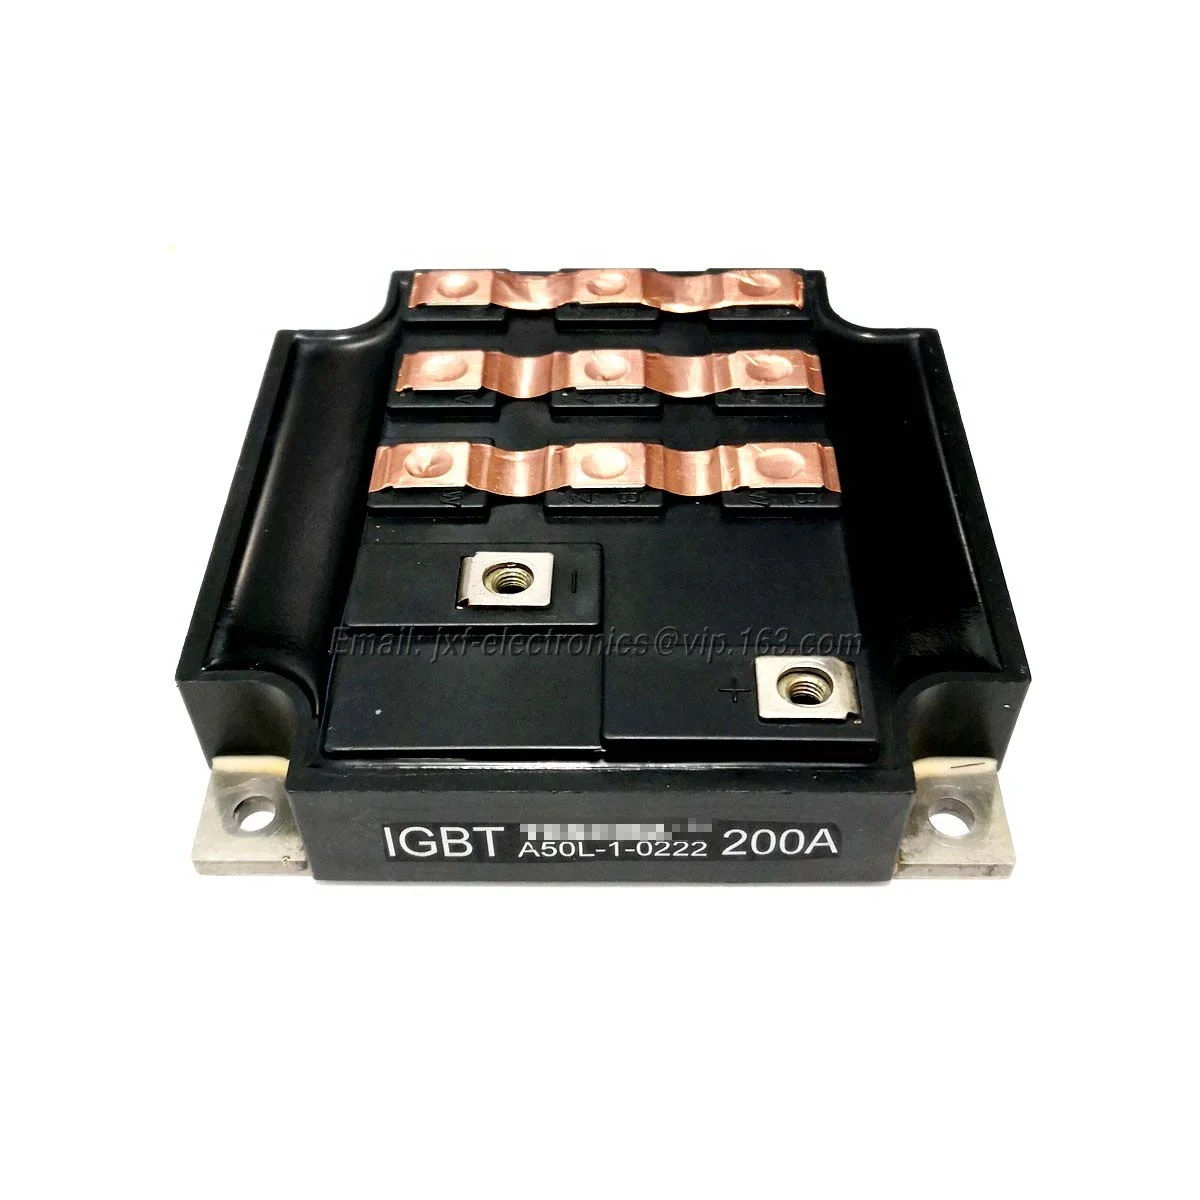 

IGBT POWER MODULE 6MBI200FA-060 A50L-0001-0222 A50L-1-0222